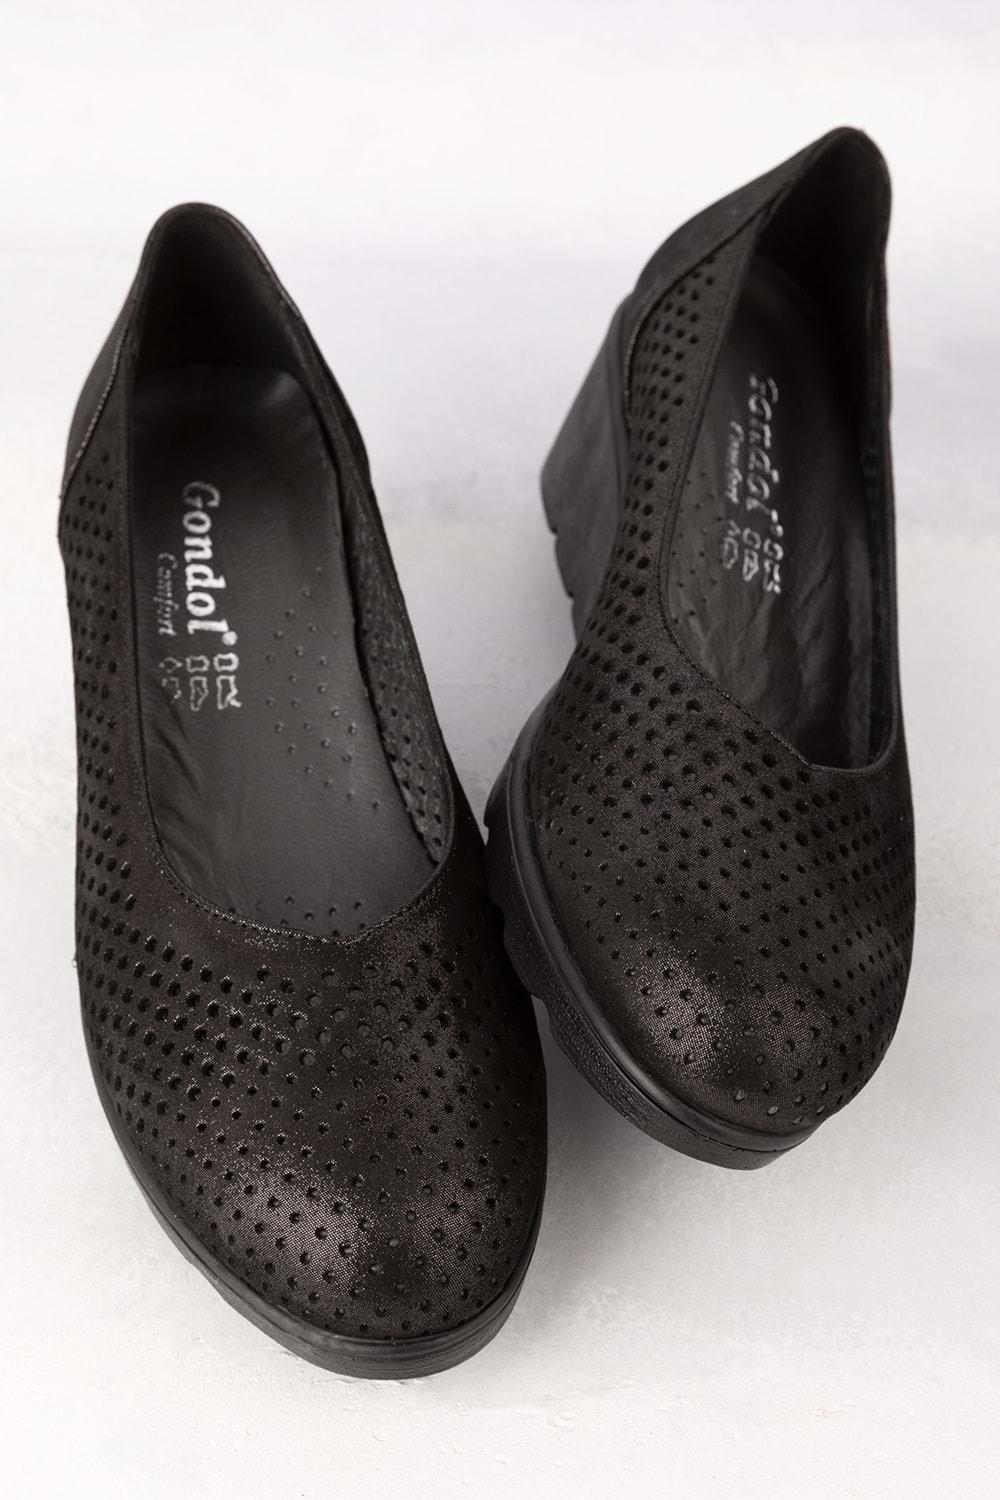 Gondol Kadın Hakiki Deri Dolgu Topuk Rahat Şık Anne Ayakkabısı ell.6596 - Siyah - 40